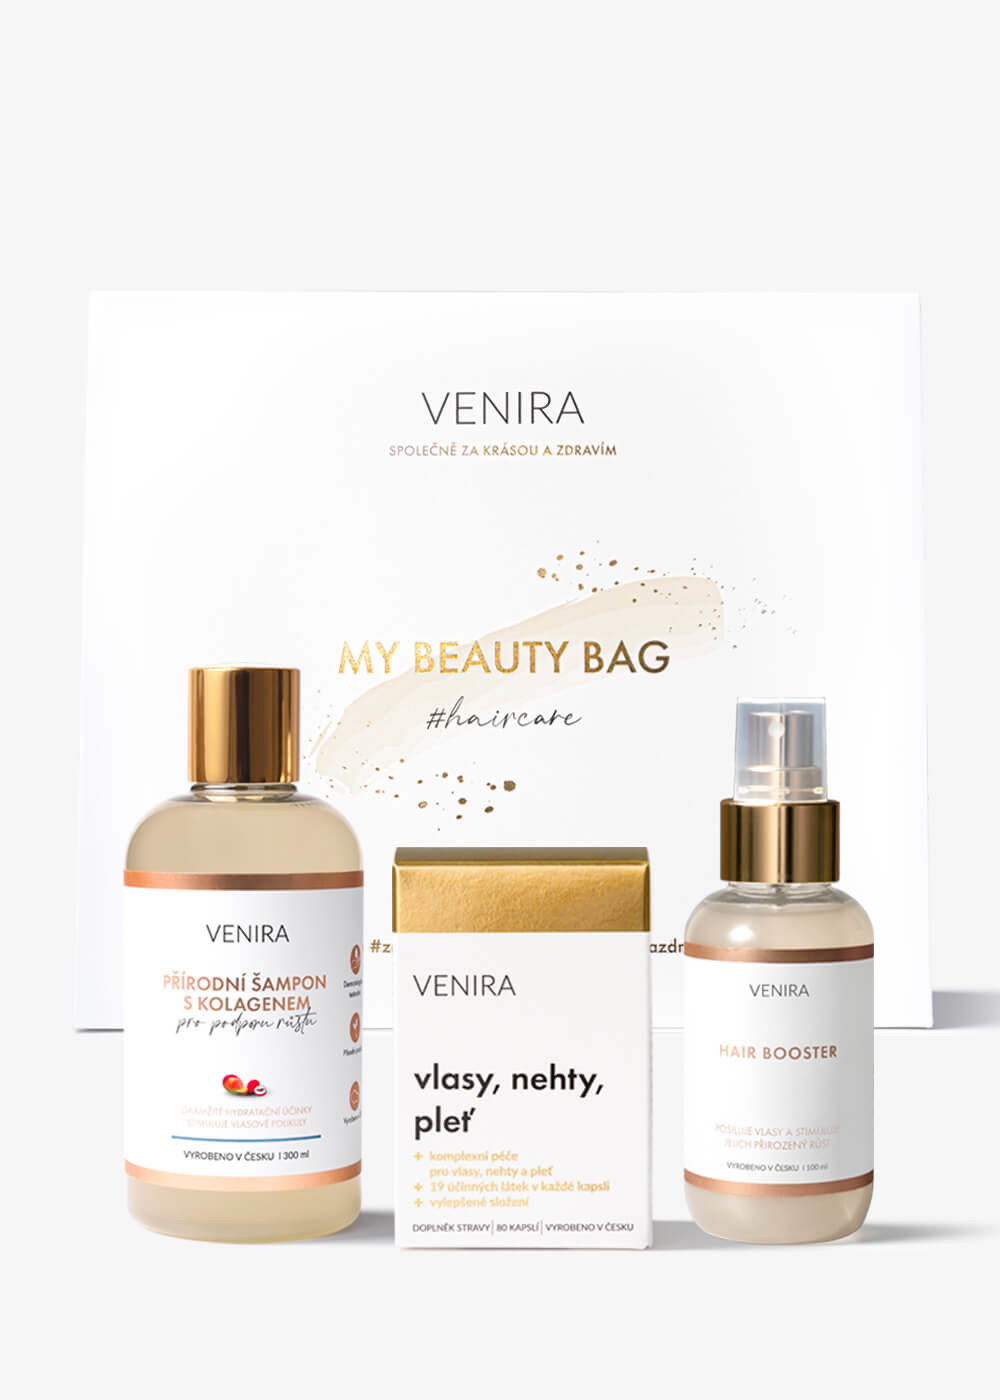 VENIRA beauty bag, dárková sada pro podporu růstu vlasů - kapsle pro vlasy, šampon s kolagenem pro podporu růstu, hair booster